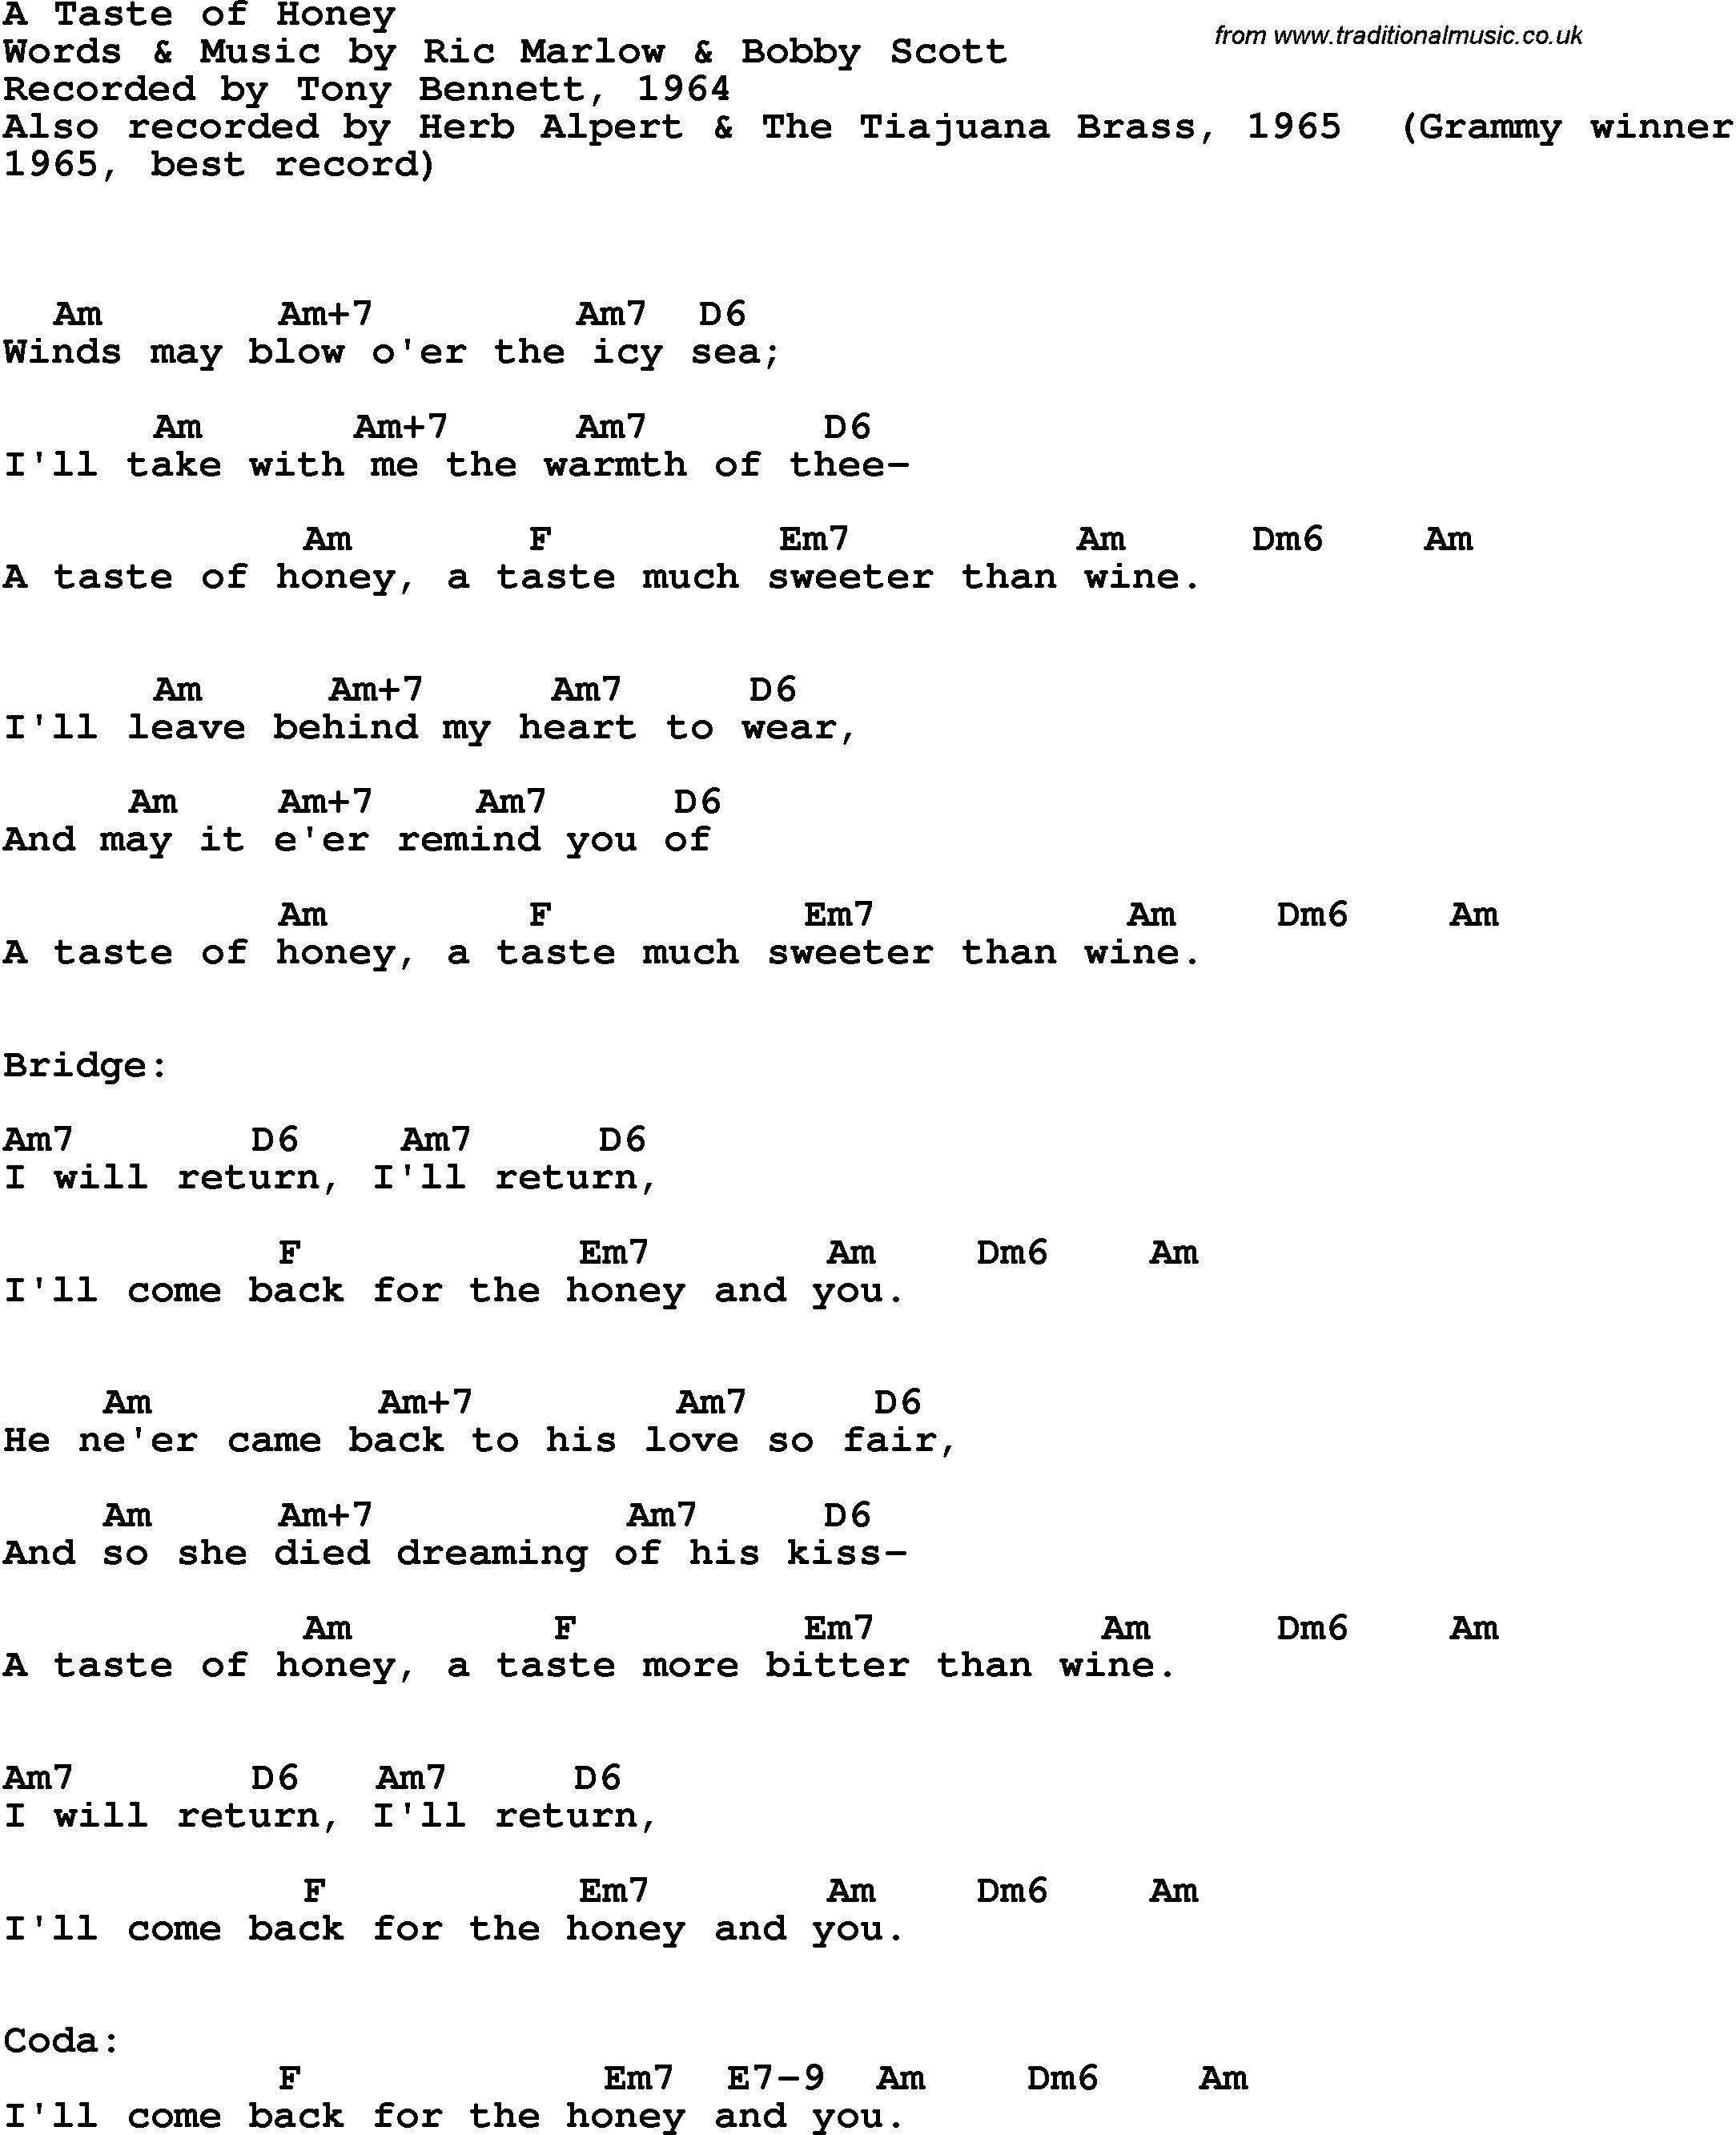 Song Lyrics with guitar chords for A Taste Of Honey - Tony Bennett, 1964